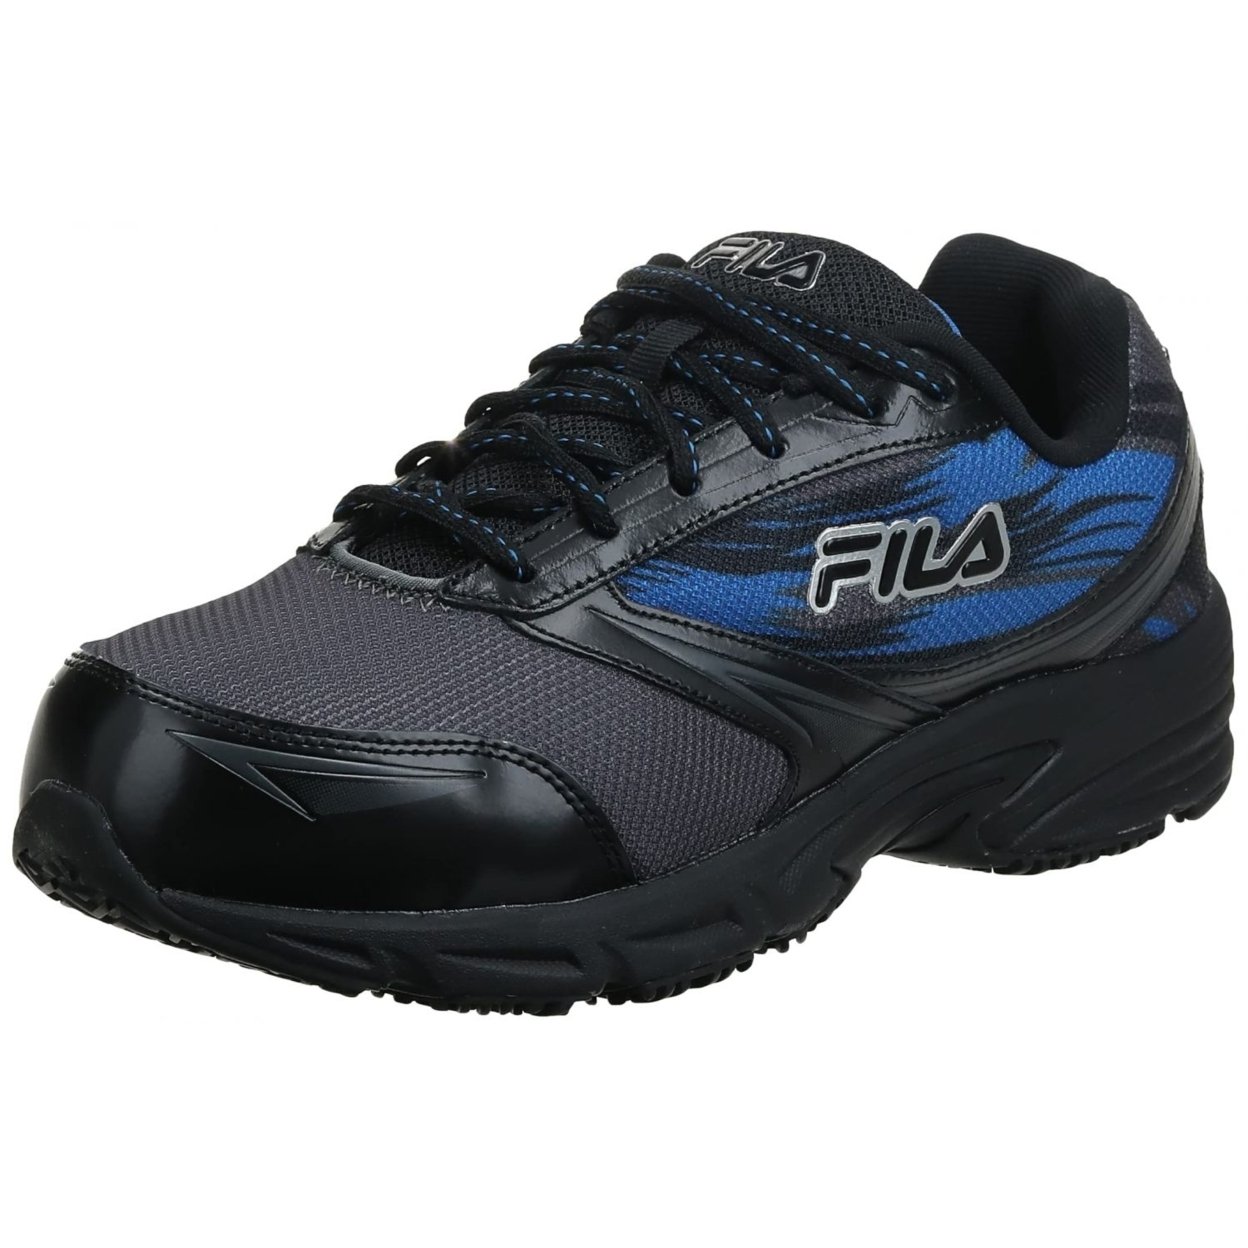 Fila Menâs Memory Meiera 2 Slip Resistant And Composite Toe Work Shoe CSRK/BLK/PRBL - Castlerock/Black/Prince Blue, 8